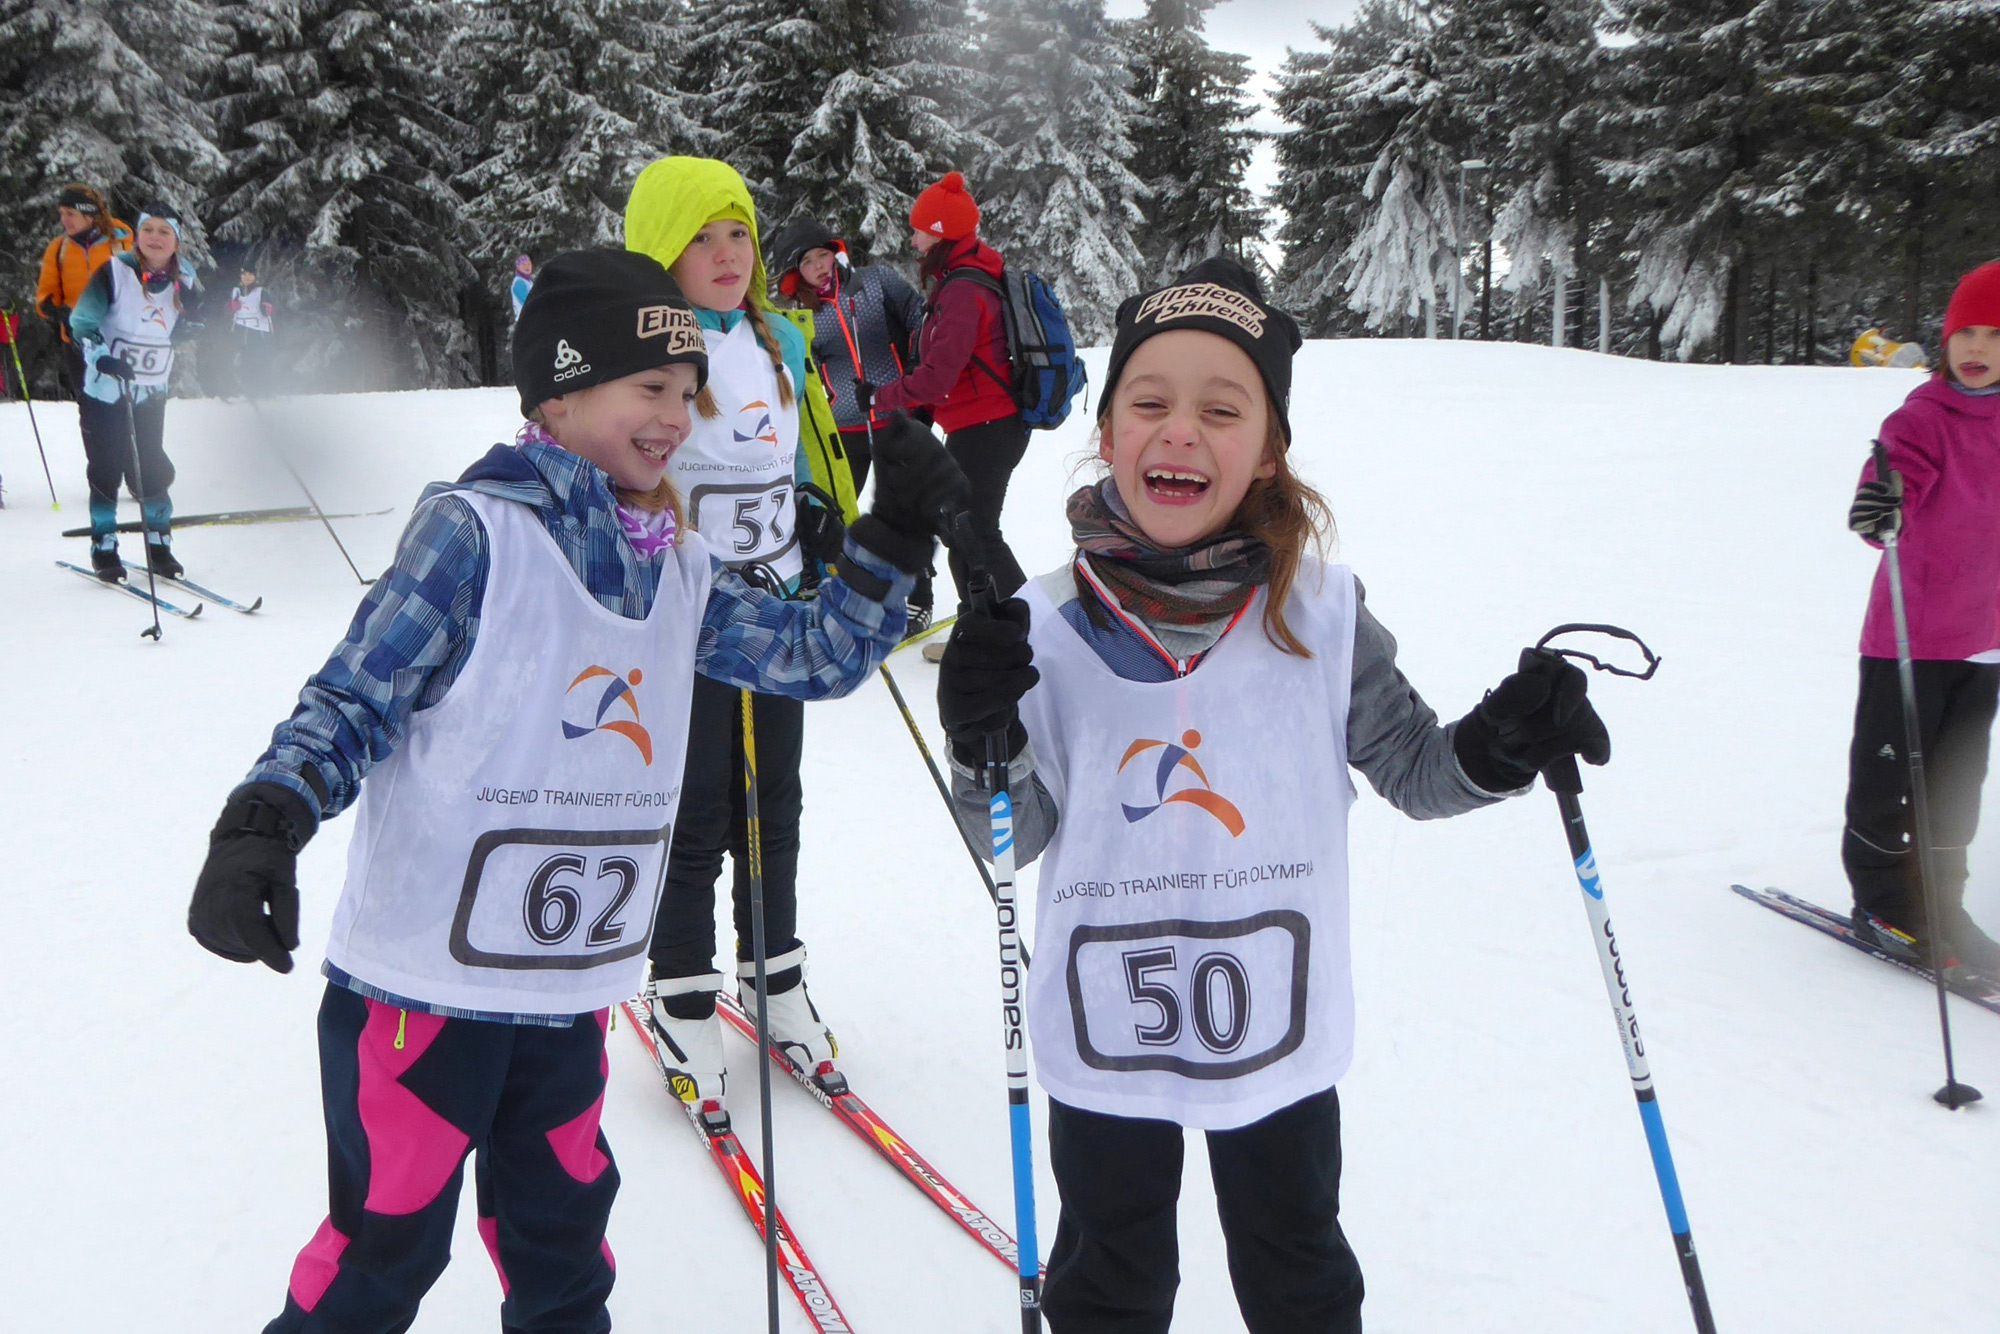 Landesfinale Skilanglauf: Kleine Einsiedler Skisportler starten zu „Jugend trainiert für Olympia“